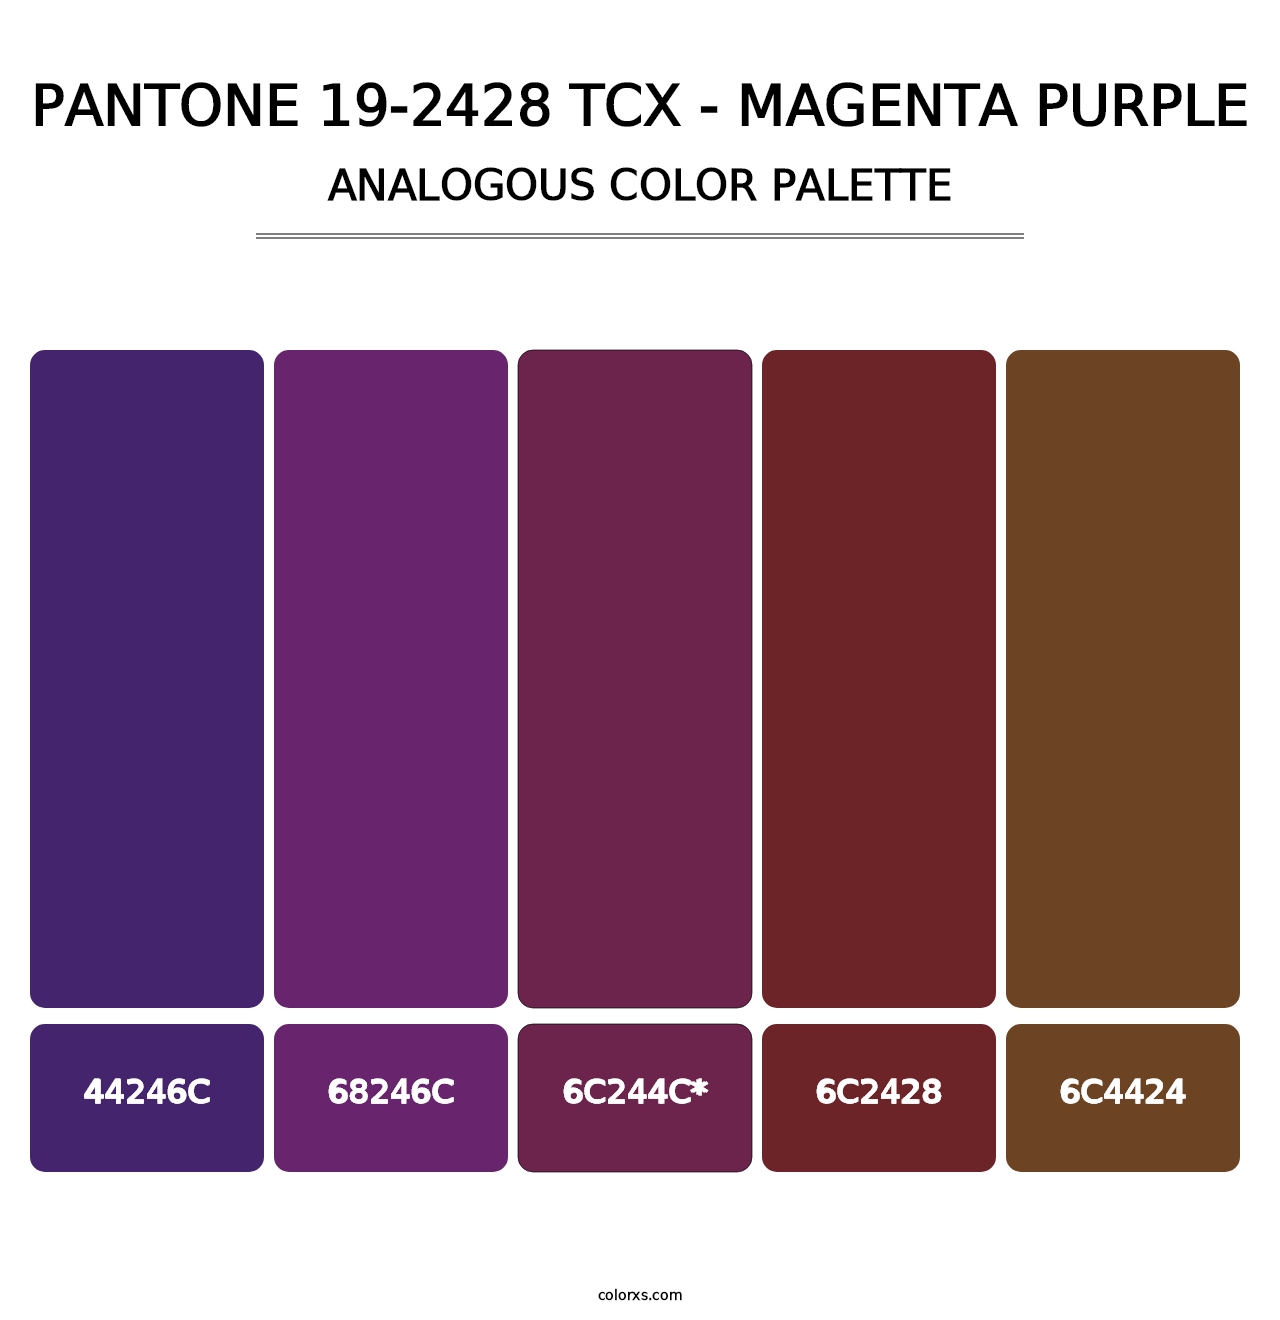 PANTONE 19-2428 TCX - Magenta Purple - Analogous Color Palette